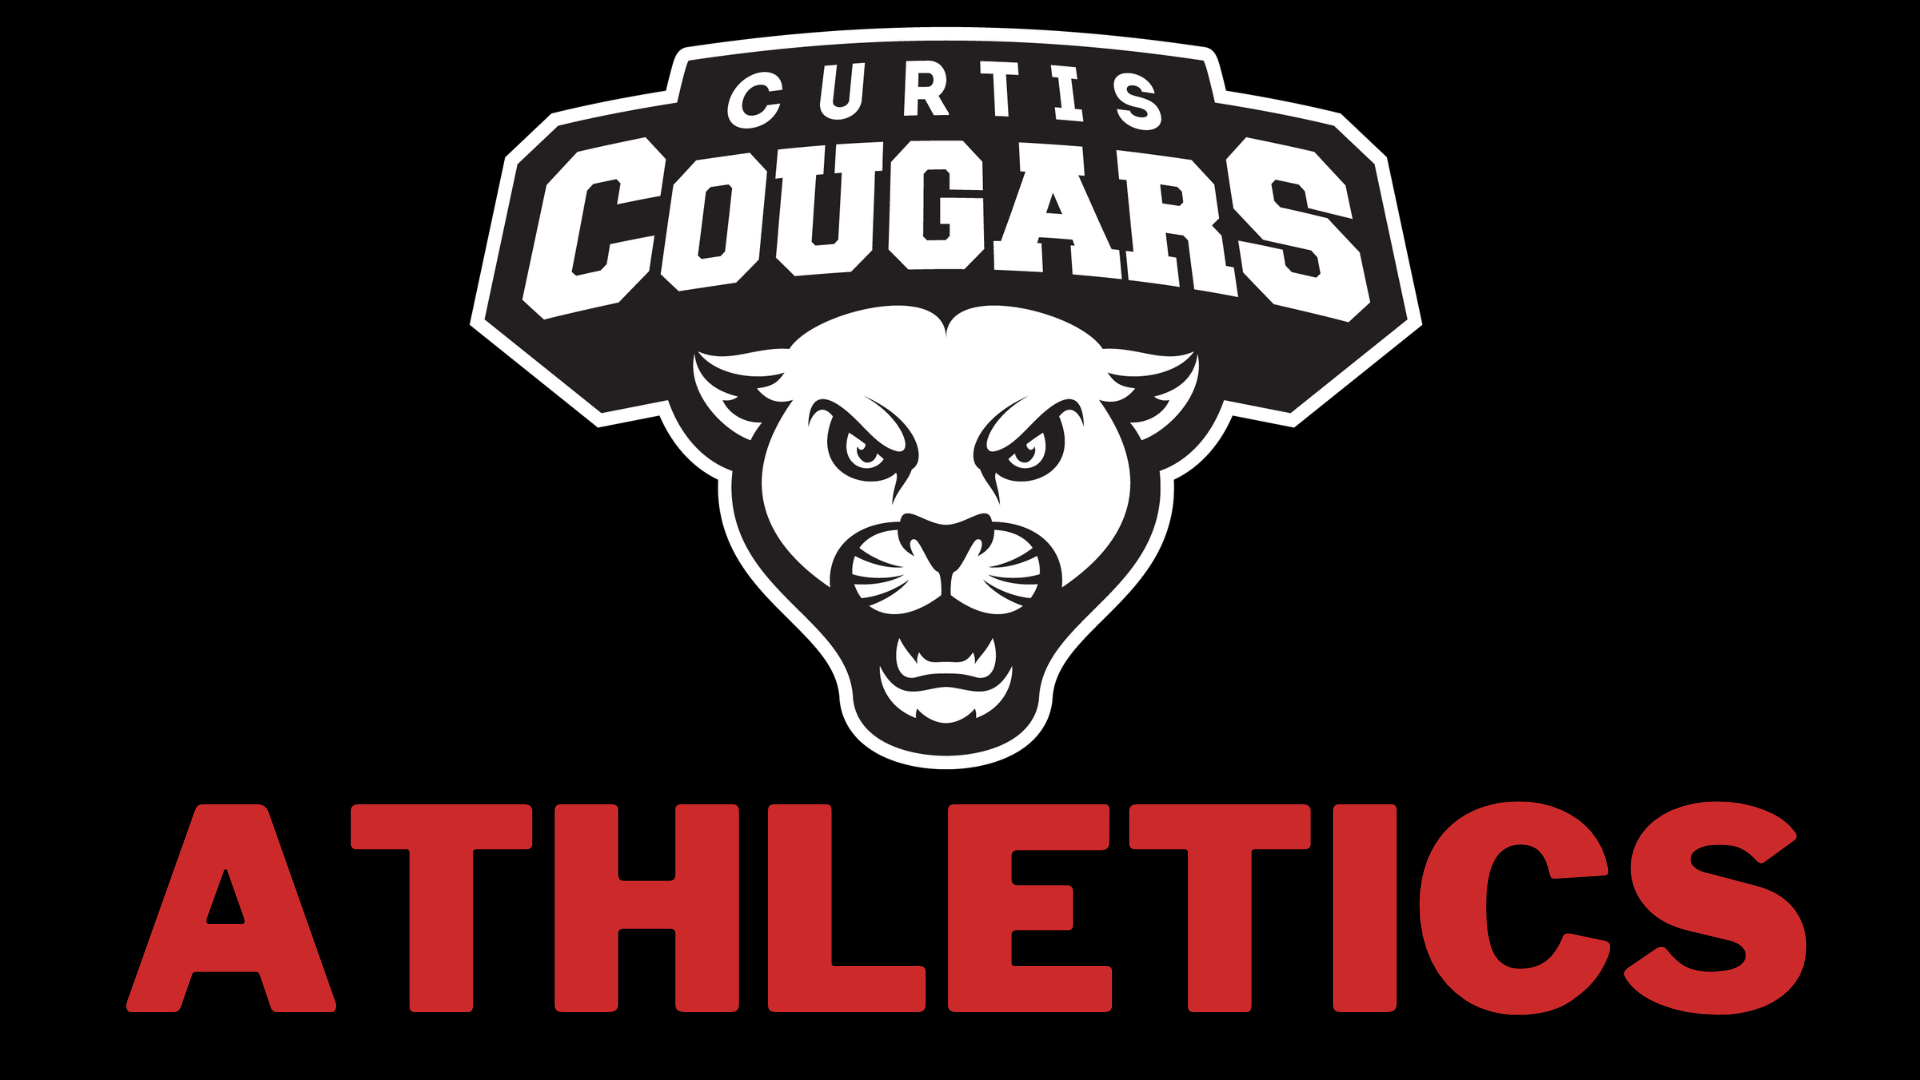 Curtis Cougars Athletics